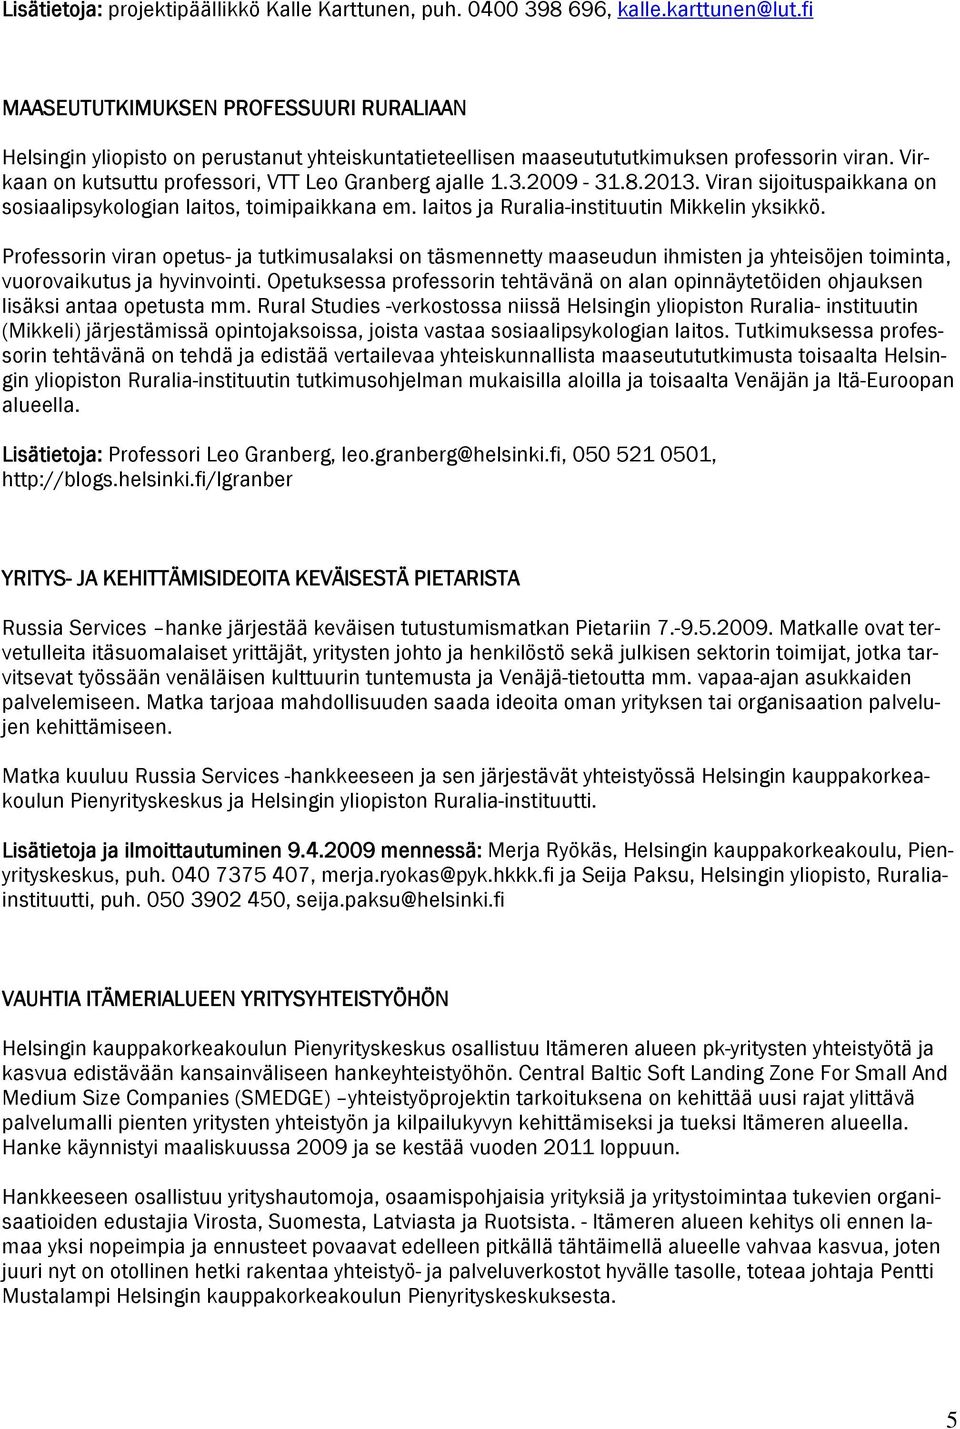 2009-31.8.2013. Viran sijoituspaikkana on sosiaalipsykologian laitos, toimipaikkana em. laitos ja Ruralia-instituutin Mikkelin yksikkö.